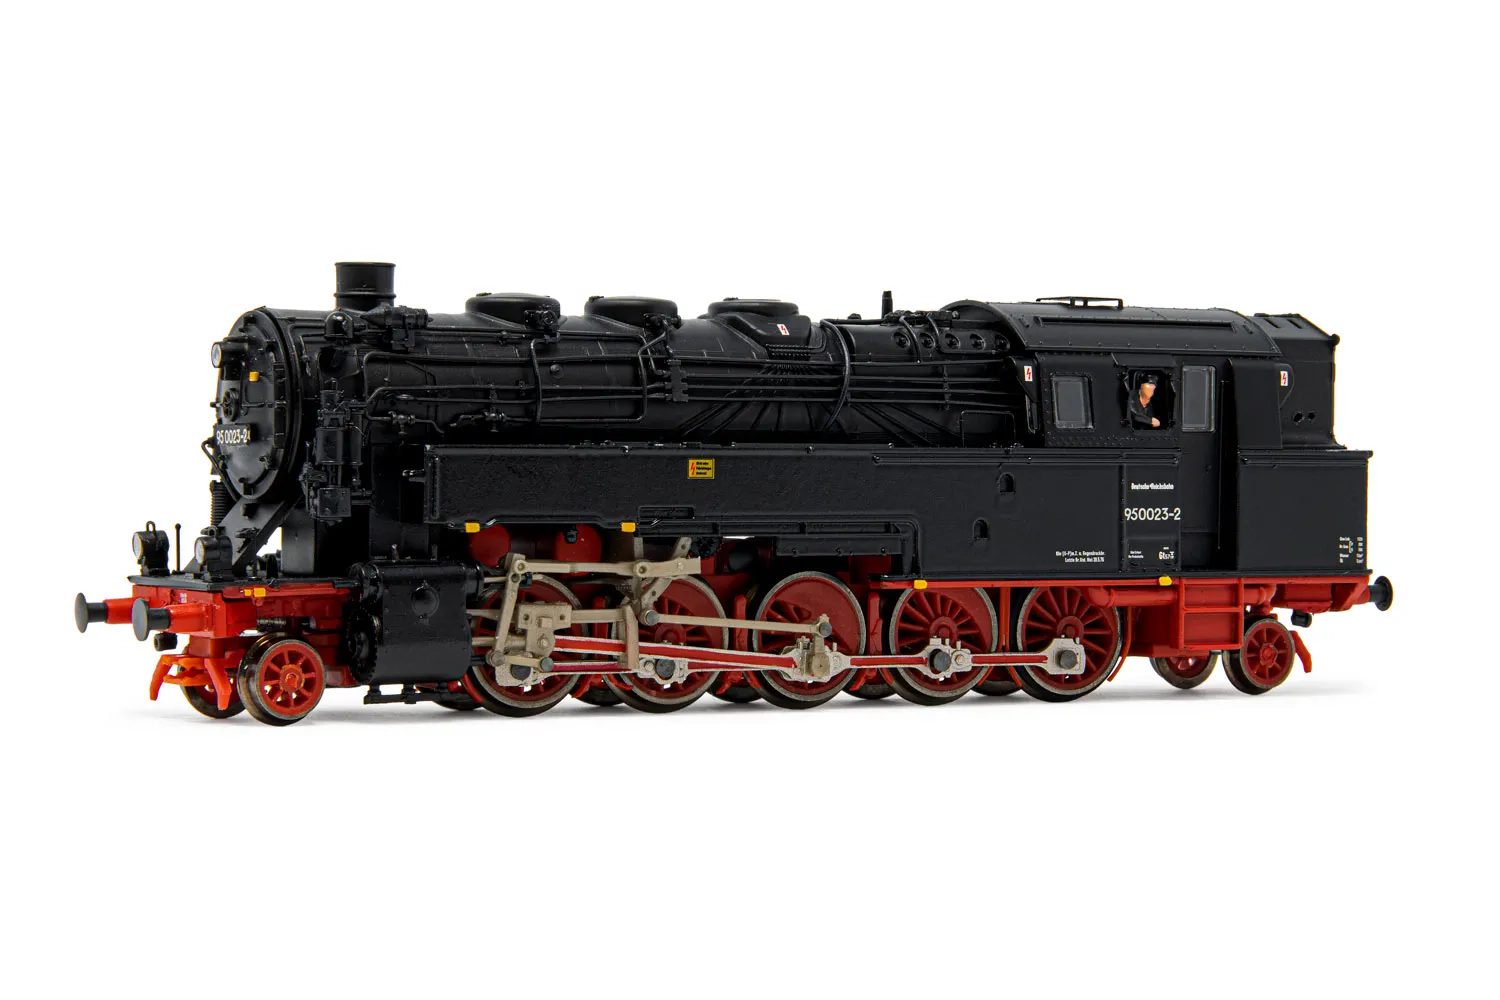 DR, Dampflokomotive BR 95 0023-2, mit Ölfeuerung, in rot/schwarzer Lackierung, Ep. IV